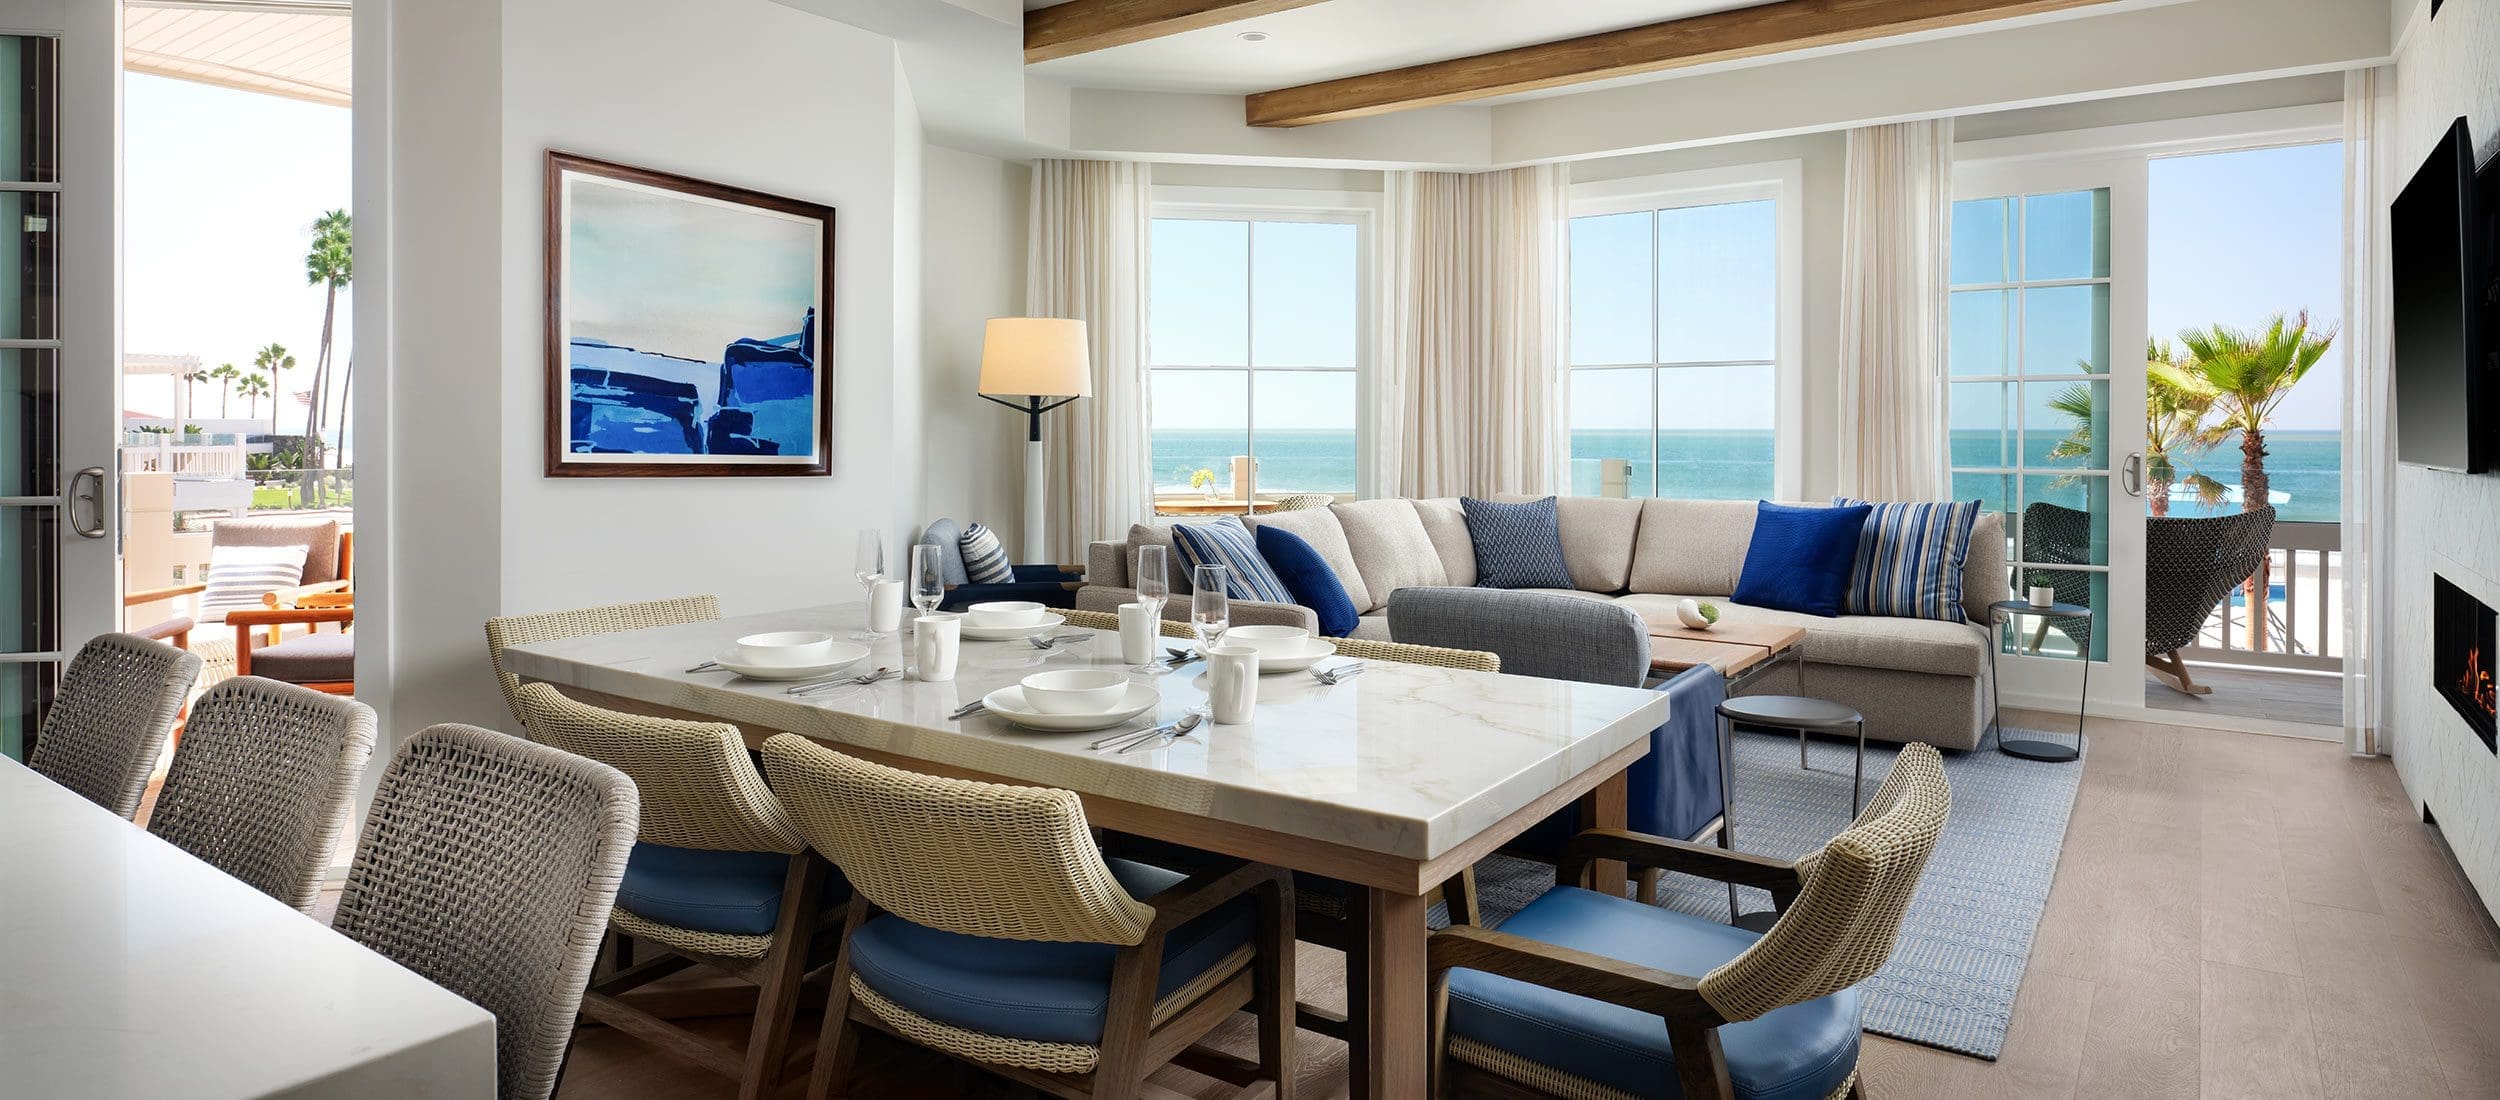 Oceanfront Residence Dining & Living Room